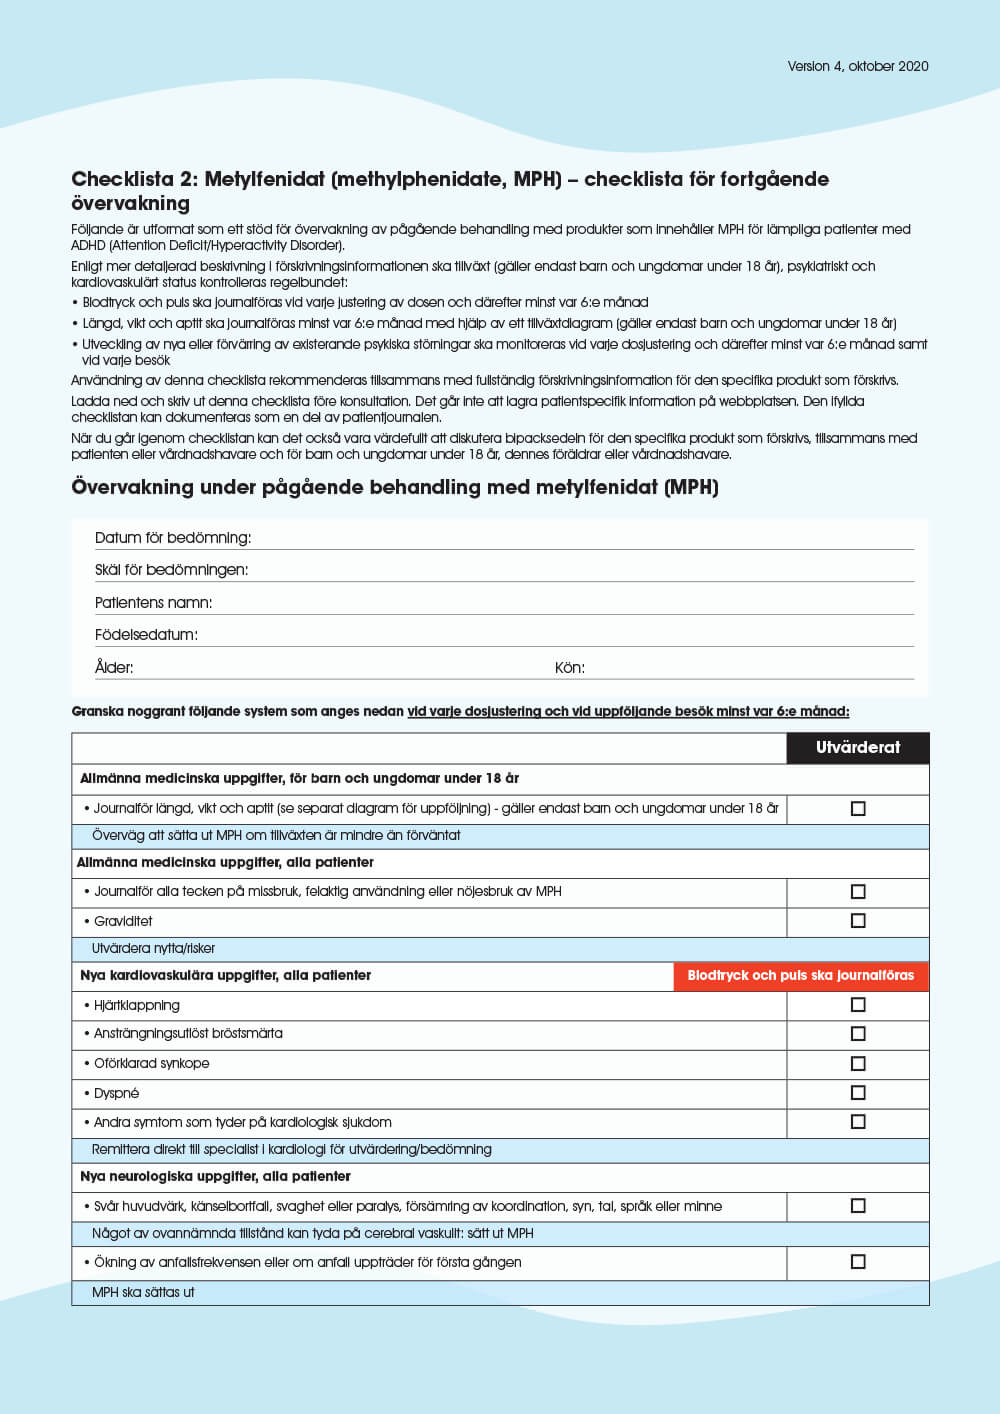 Förhandsgranska: Checklista 2: Metylfenidat (MPH) – checklista för fortgående övervakning